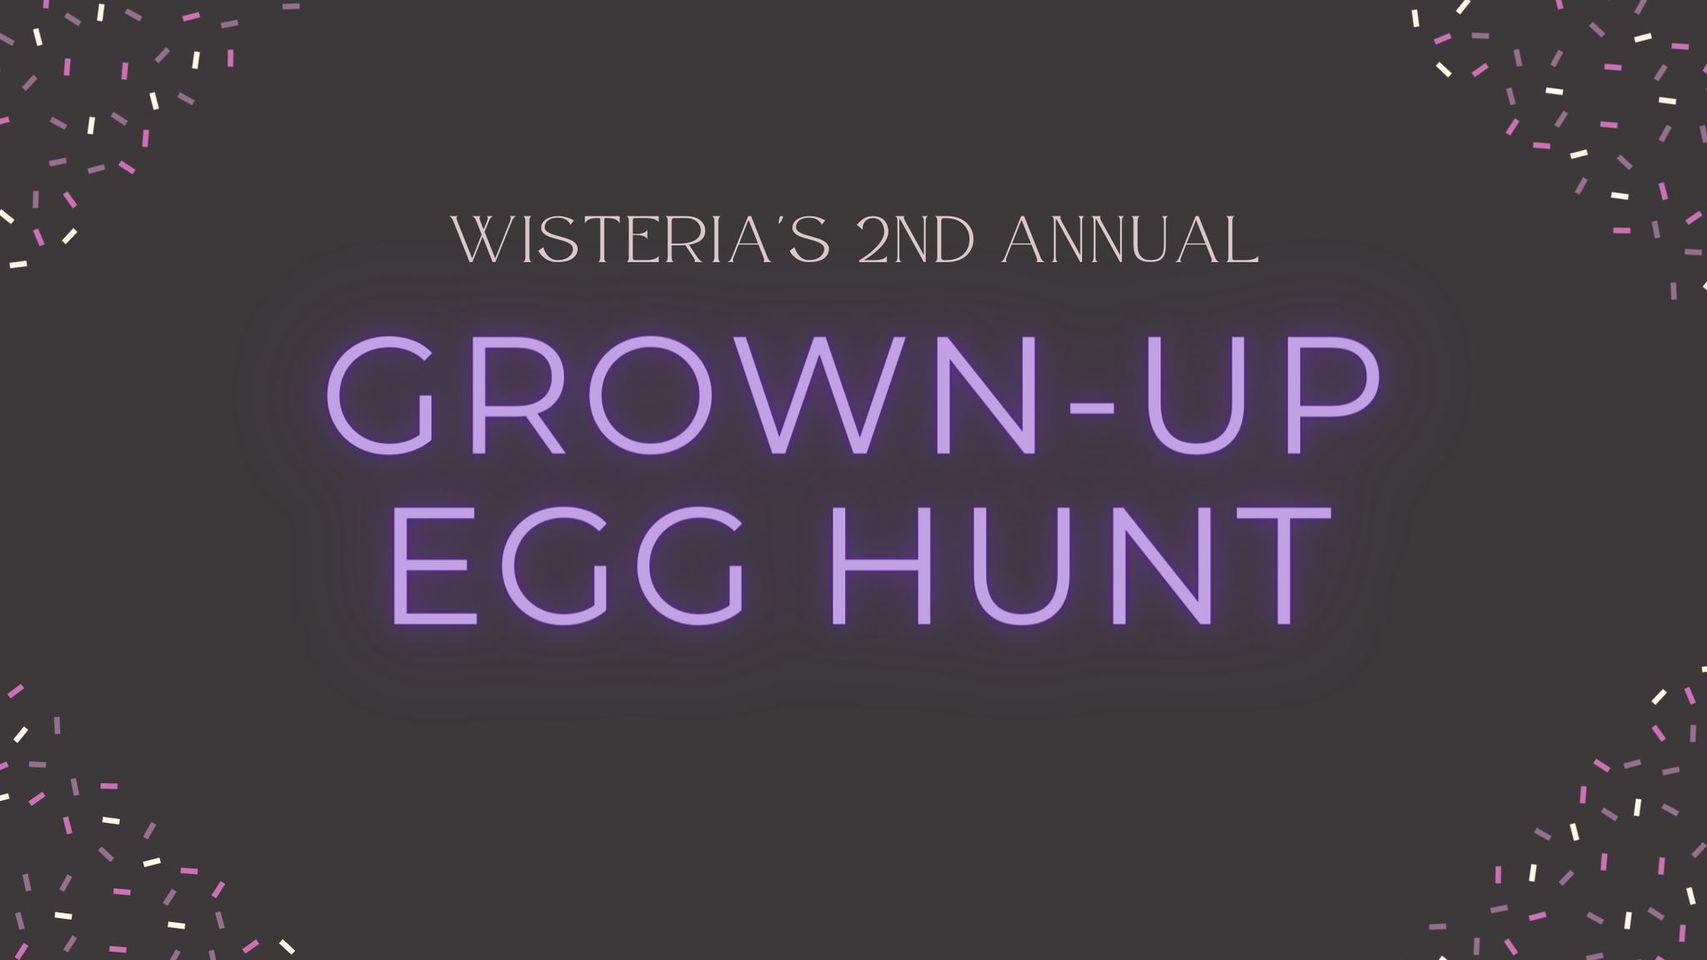 Grown-up Egg Hunt